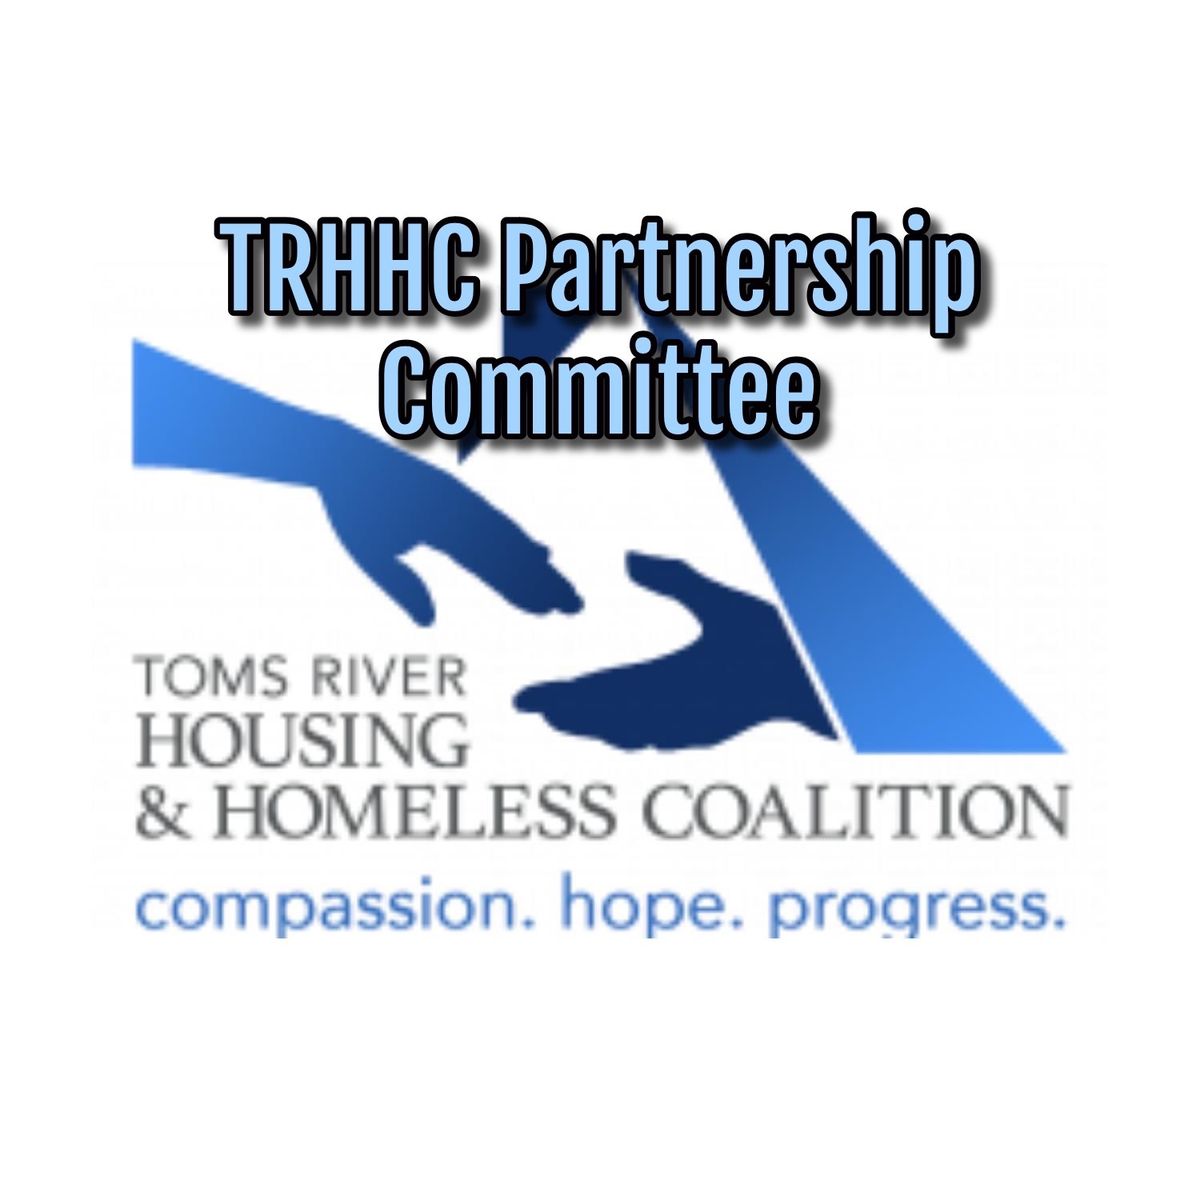 TRHHC Partnership Committee Meeting 